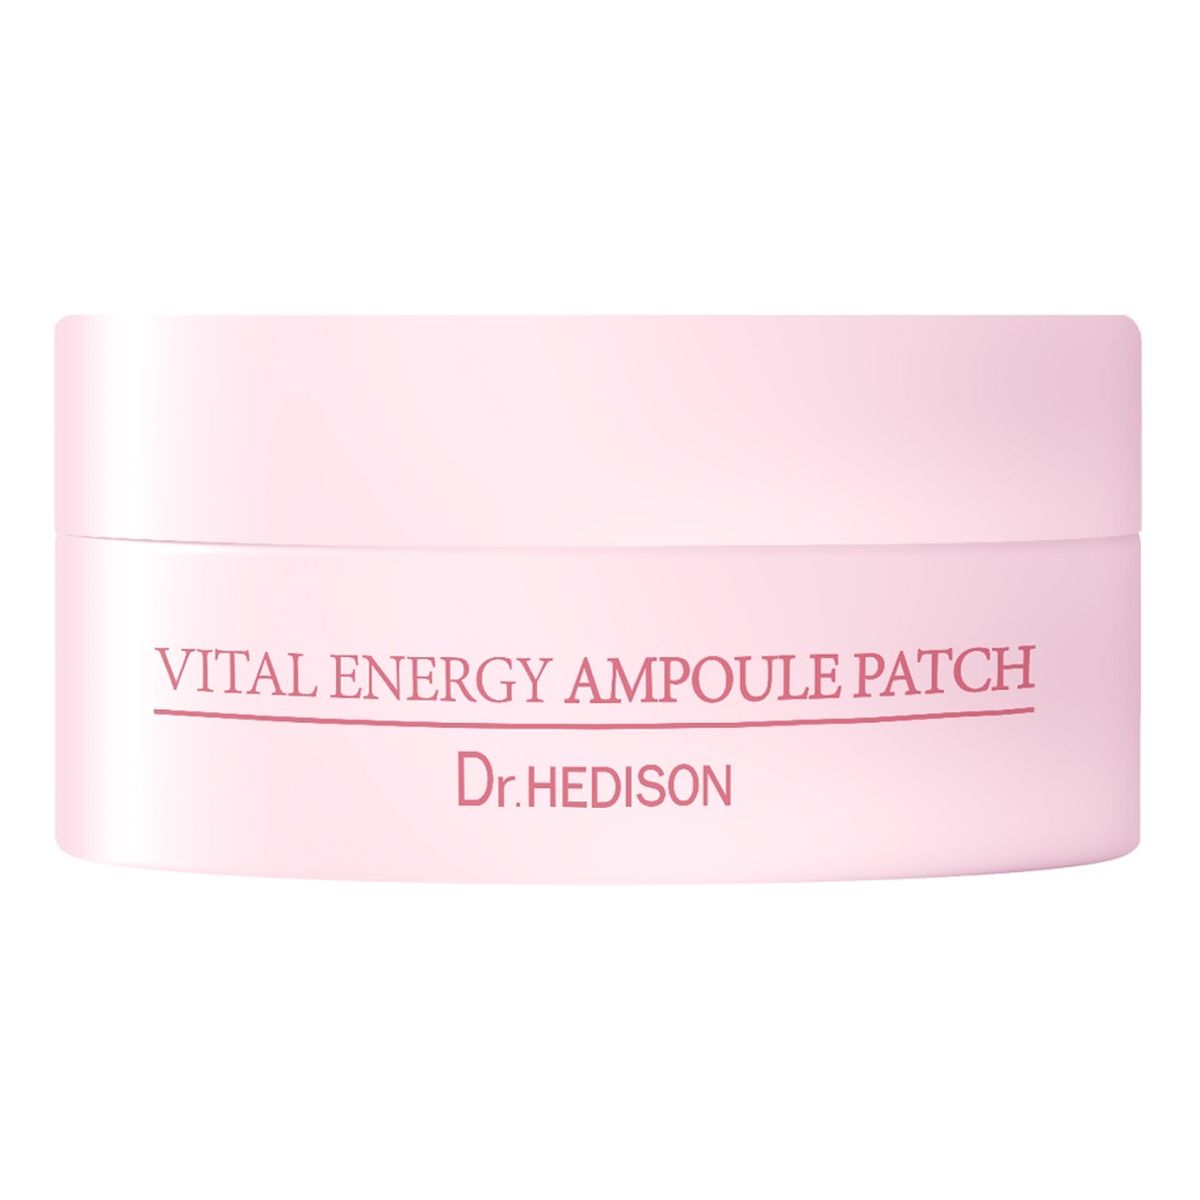 Dr.HEDISON Vital energy ampoule patch odmładzające i przywracające elastyczność płatki pod oczy 60szt.